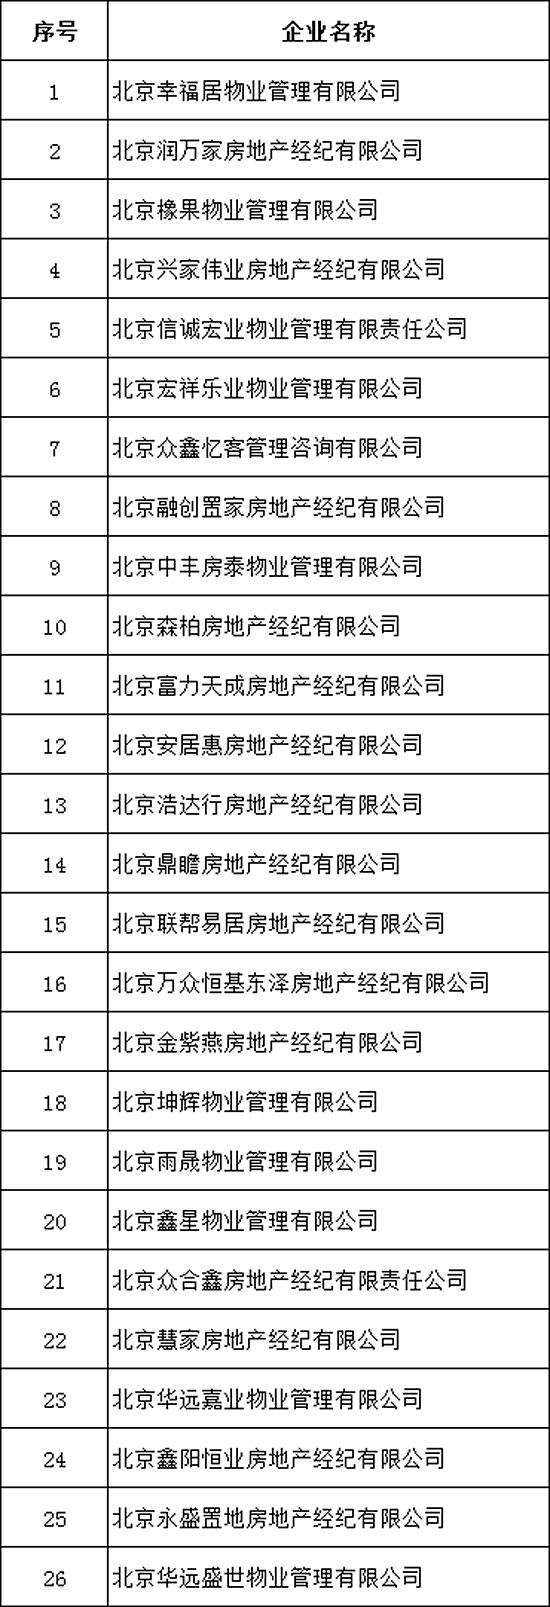 北京严查炒作学区房、违规商改住等行为26家机构被查处